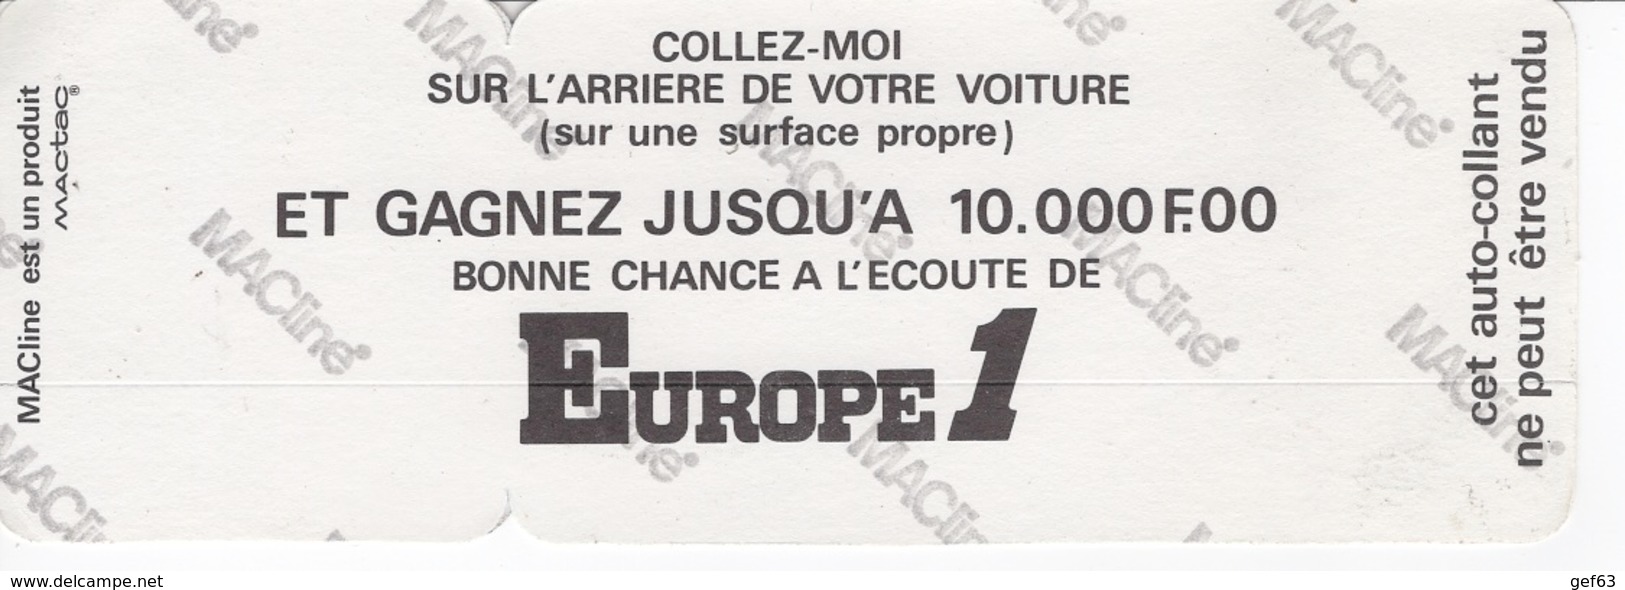 Europe 1 C'est Naturel - Jean-Loup Lafont - Autocollant / Adesivi / Aufkleber / Stickers - Autocollants